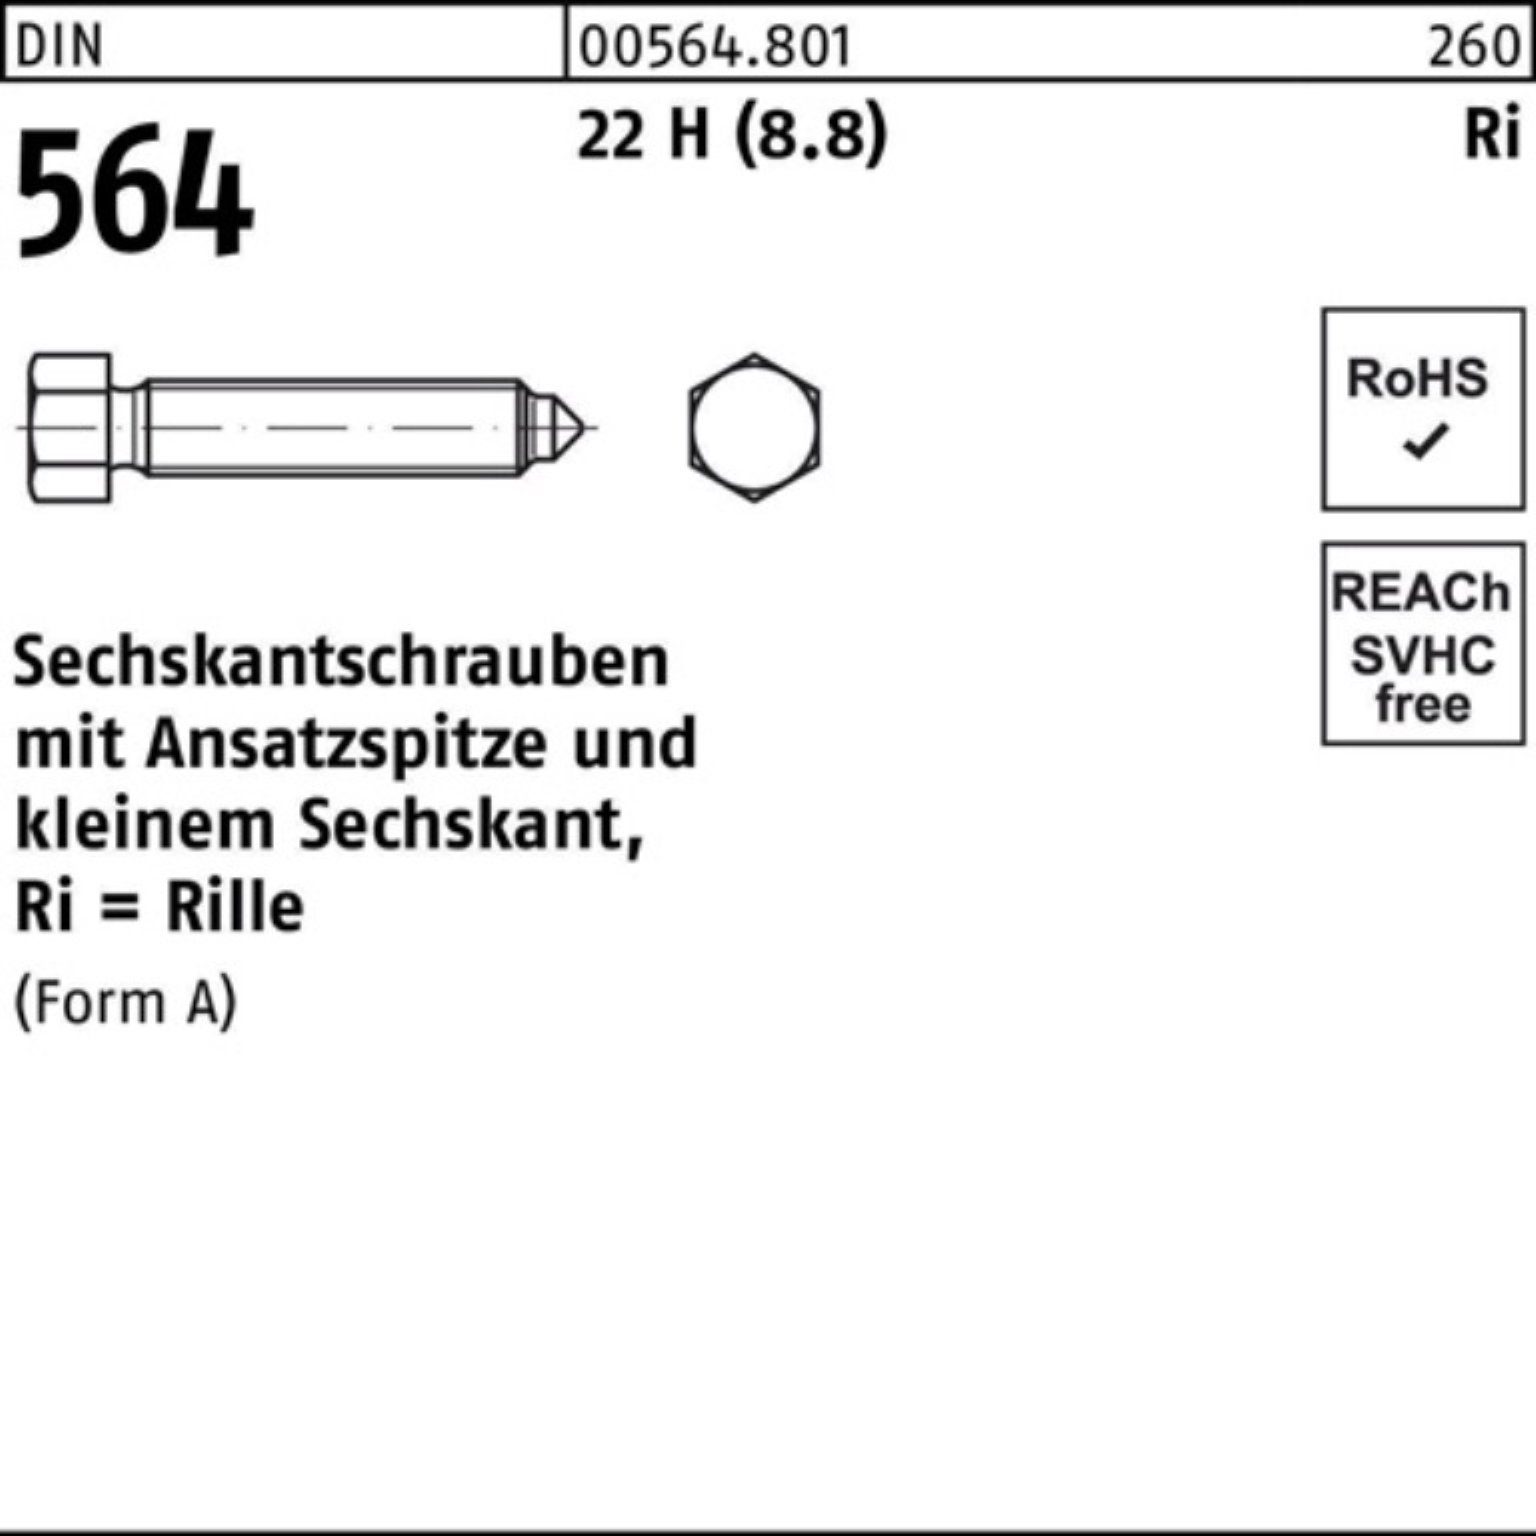 Sechskantschraube Reyher 22 100er Pack DIN 12x 564 AM 50 (8.8) Ansatzspitze Sechskantschraube H